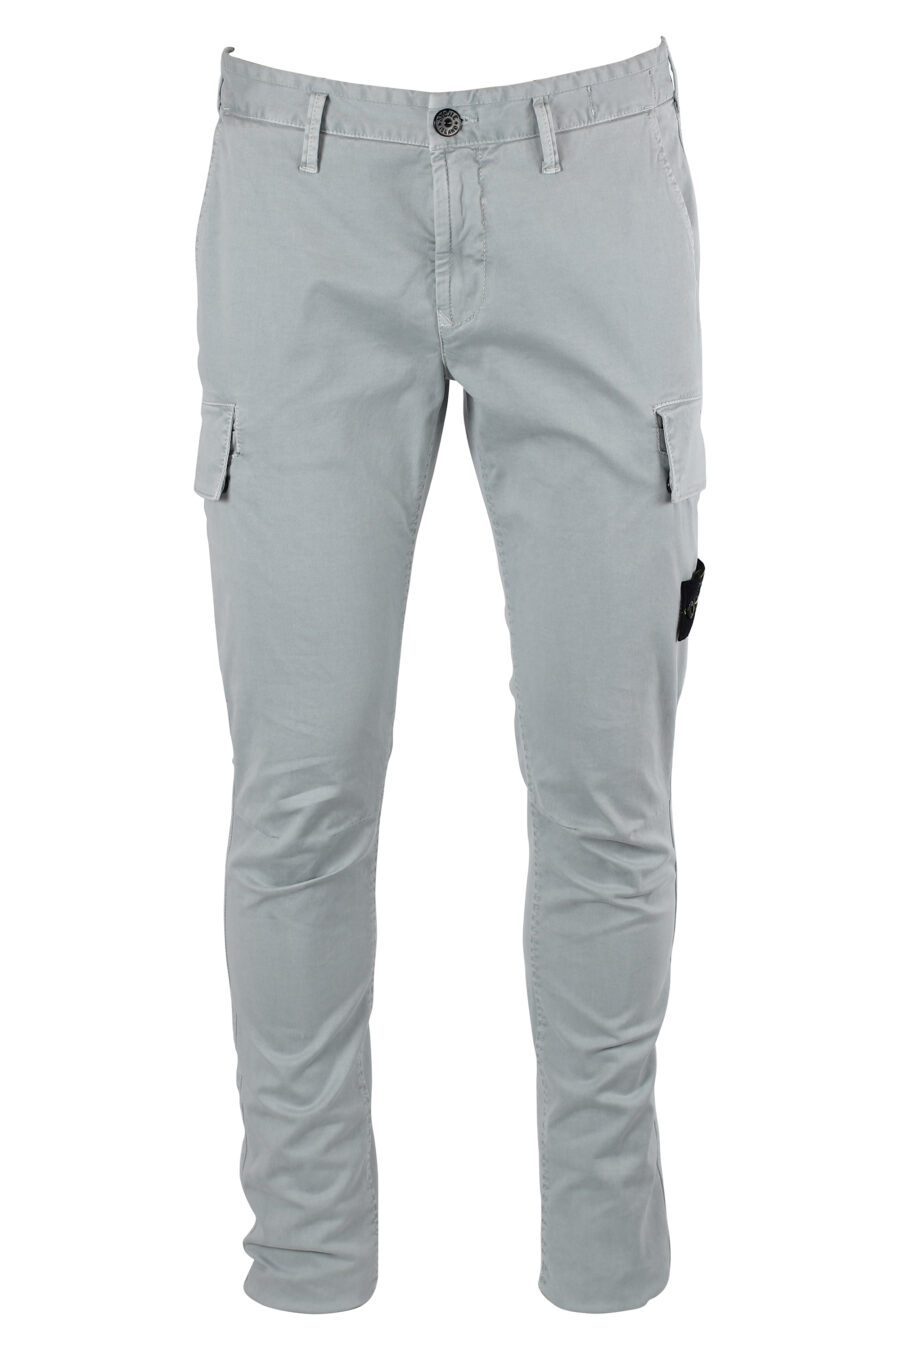 Pantalon gris clair avec poches et empiècement latéral - IMG 8332